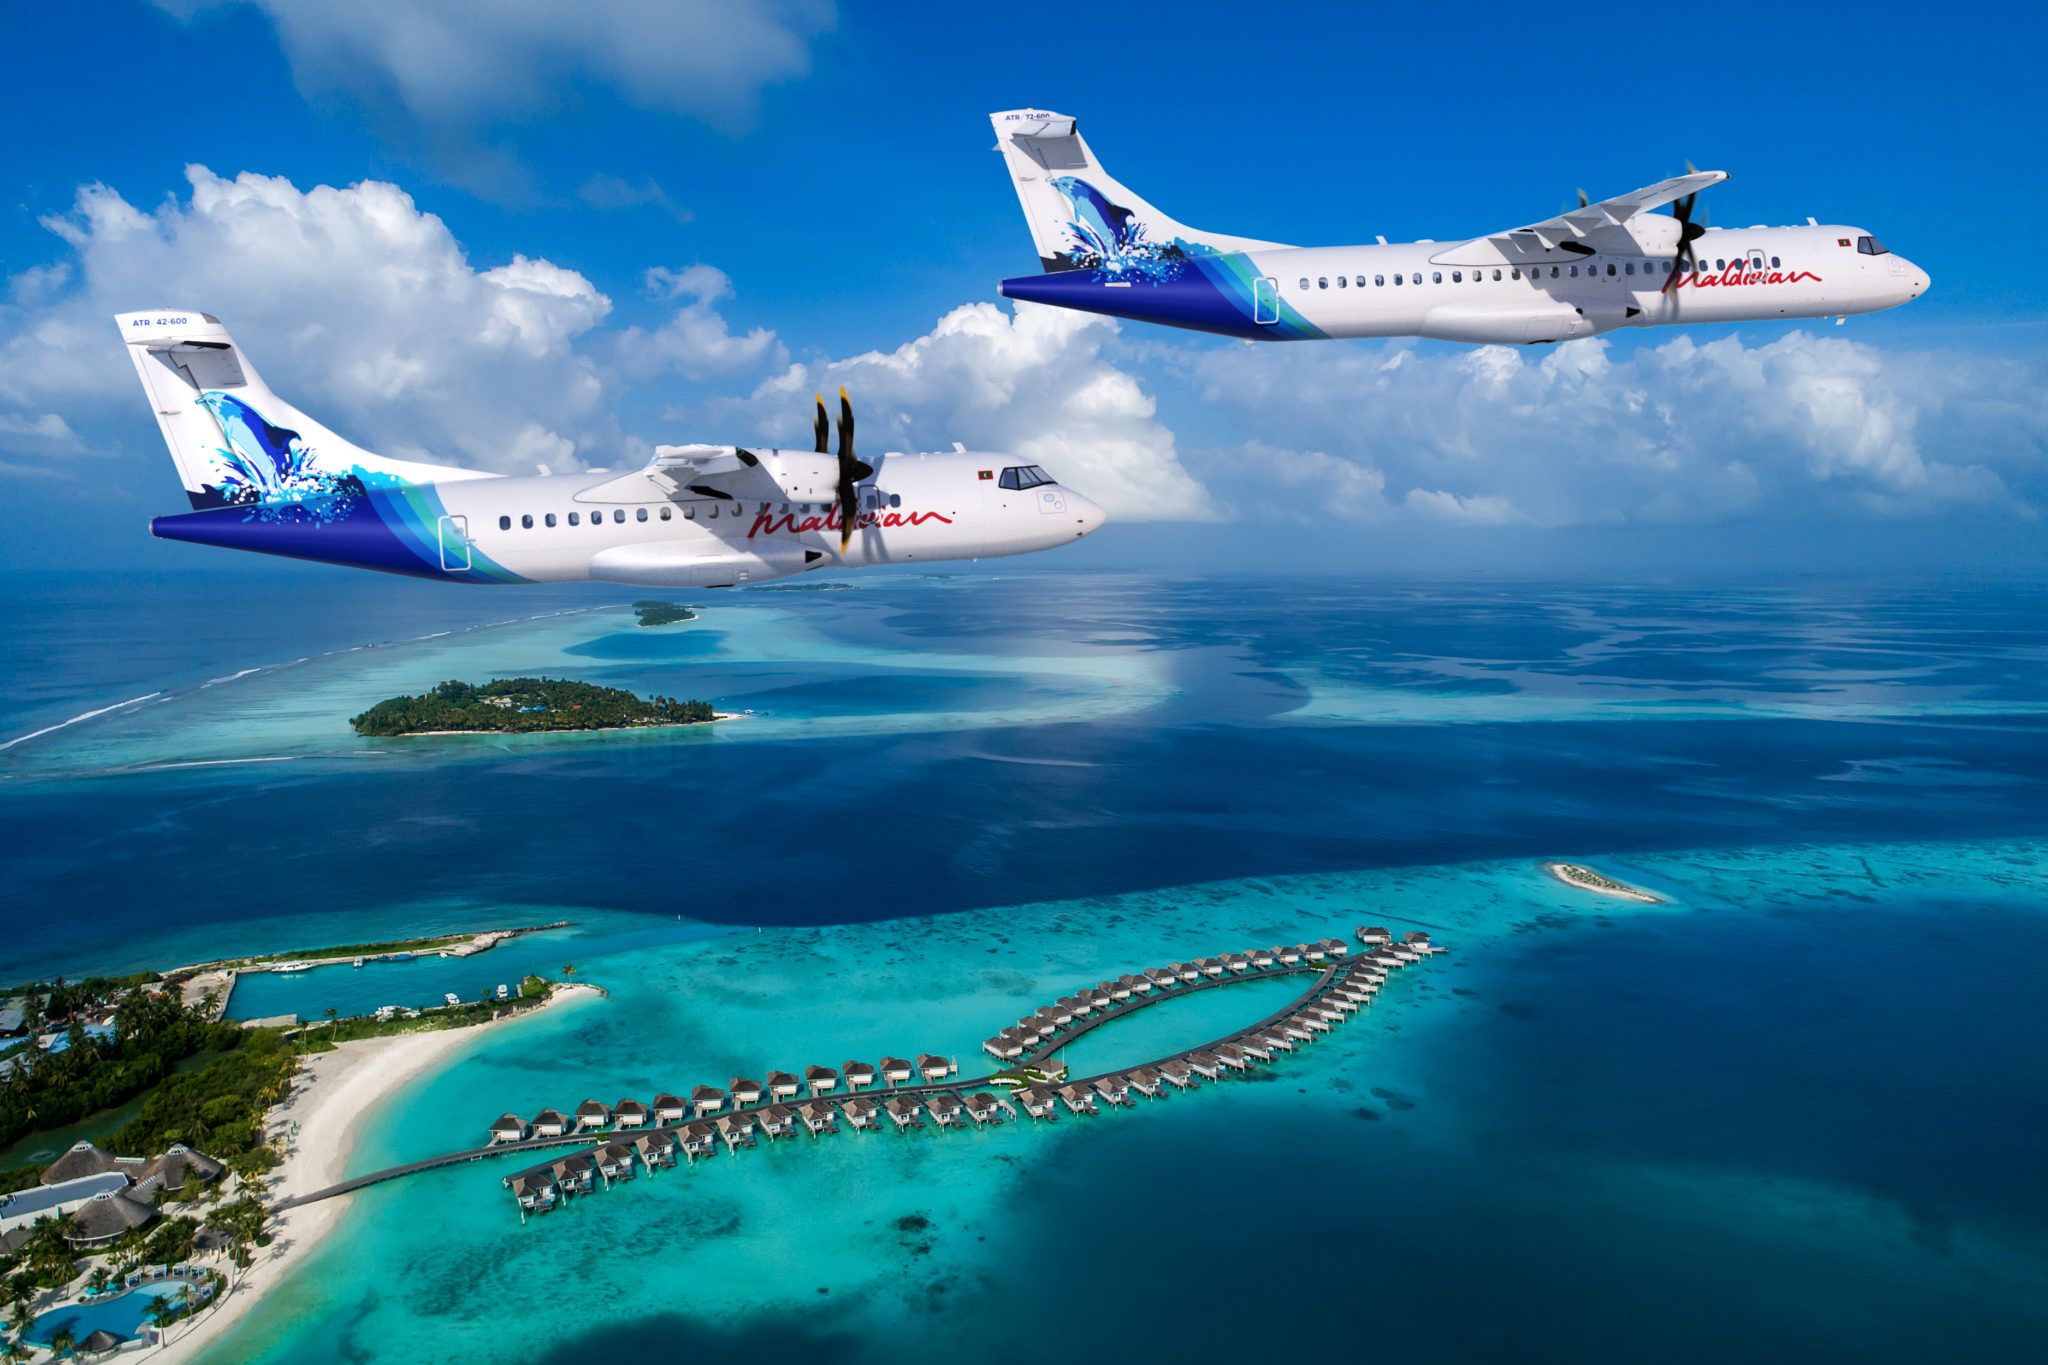 Maldivian ATR planes